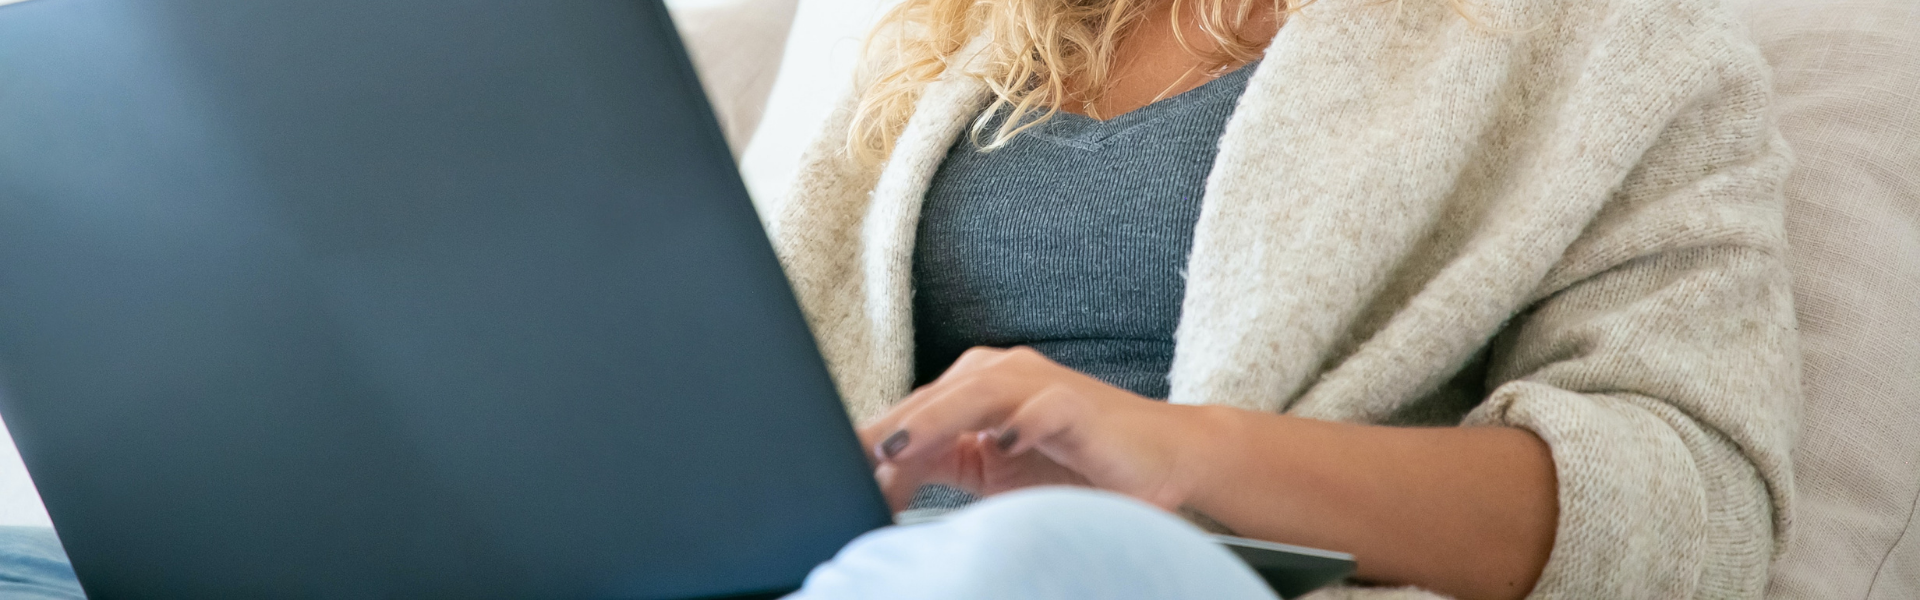 Mujer usando un portátil - Descubre cómo renovar el paro online - CertificadoElectronico.es